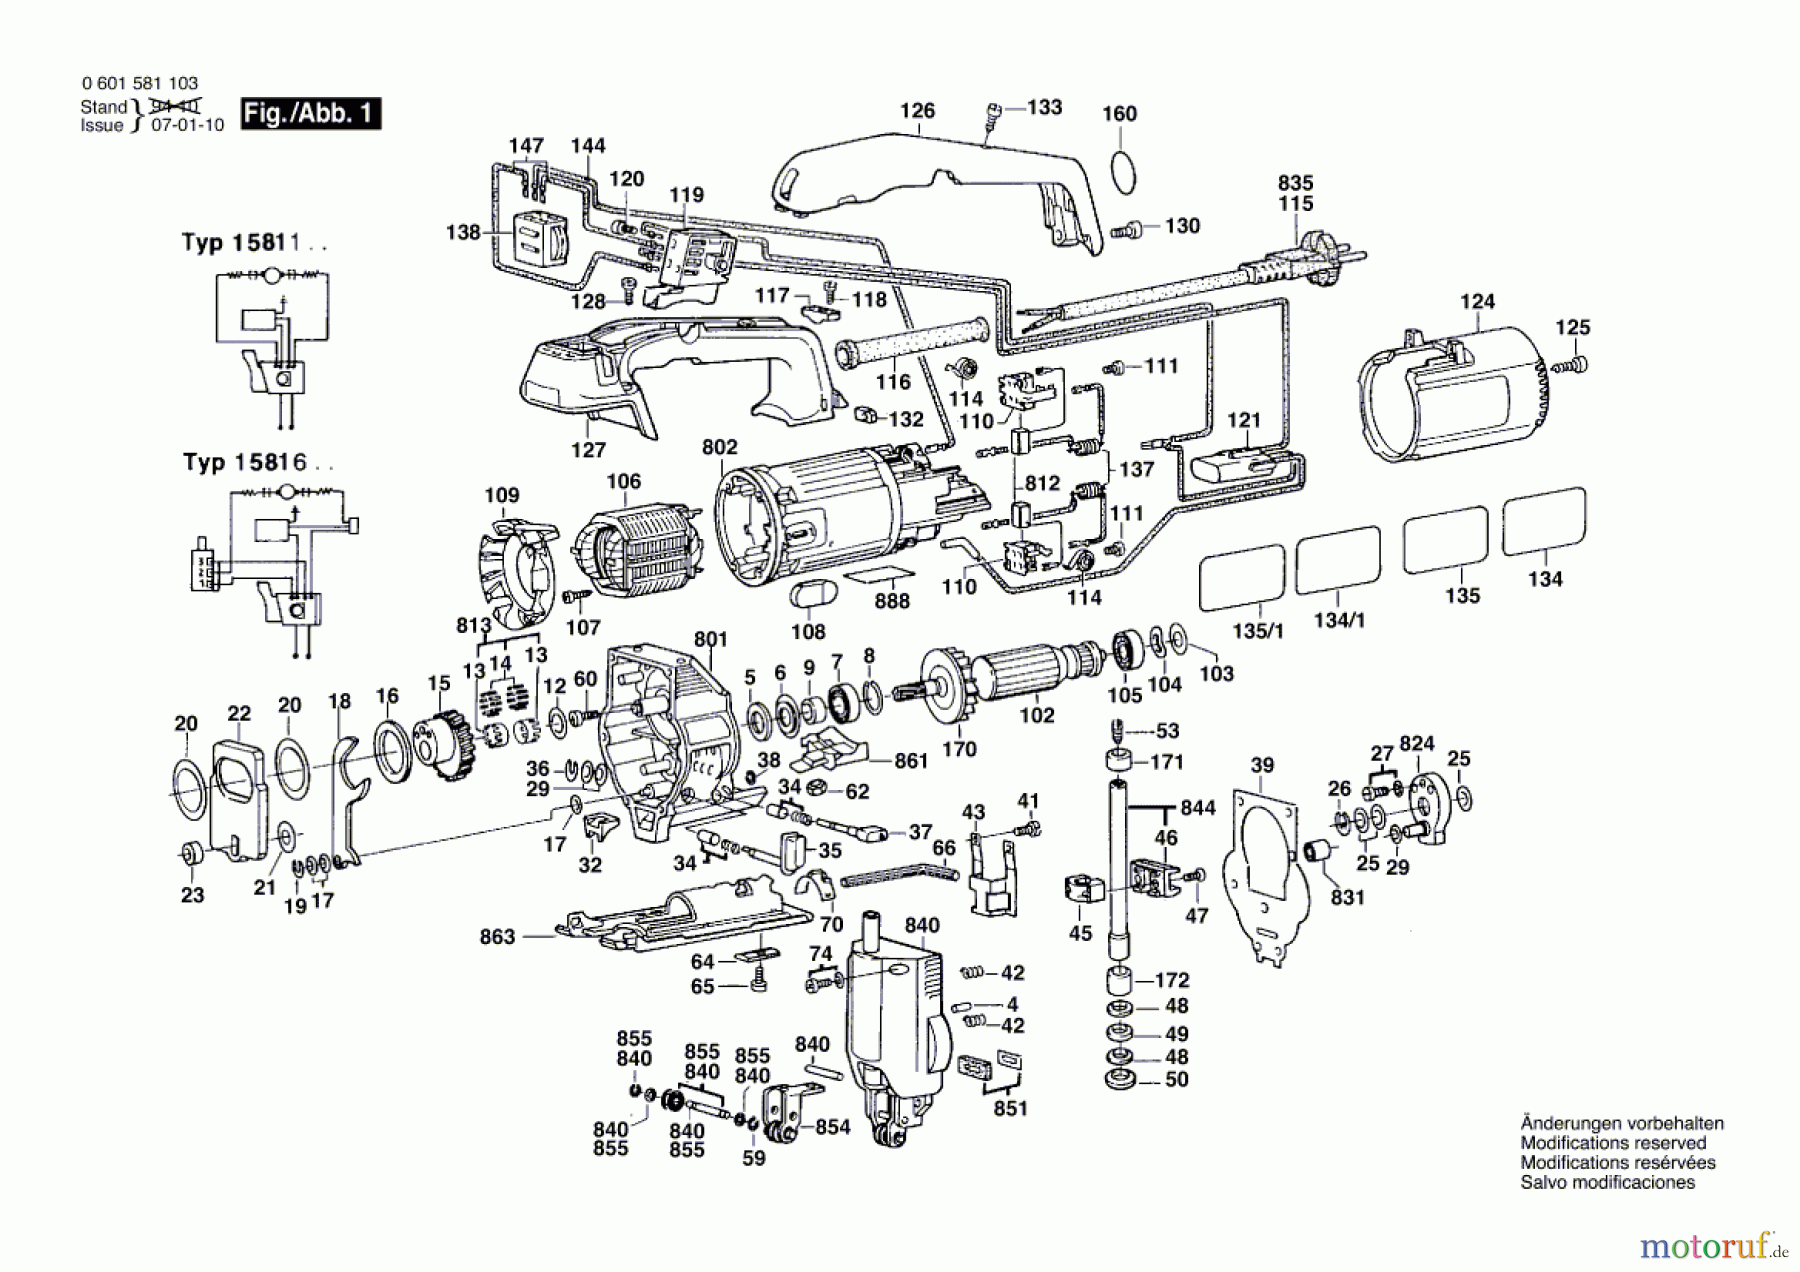  Bosch Werkzeug Stichsäge GST 60 PB Seite 1